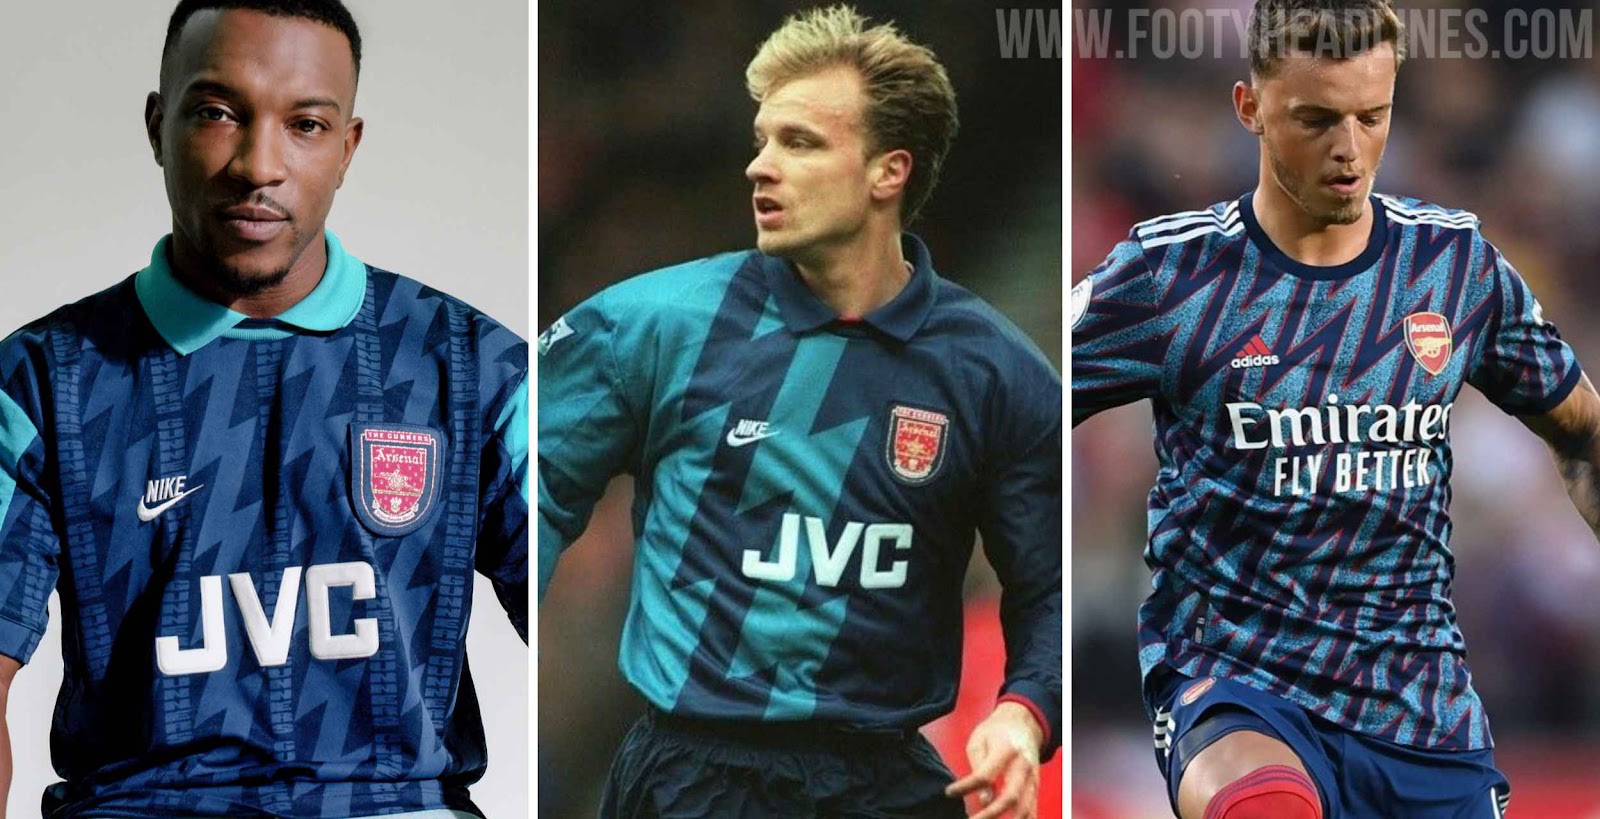 Arsenal 95/96 JVC Away Kit